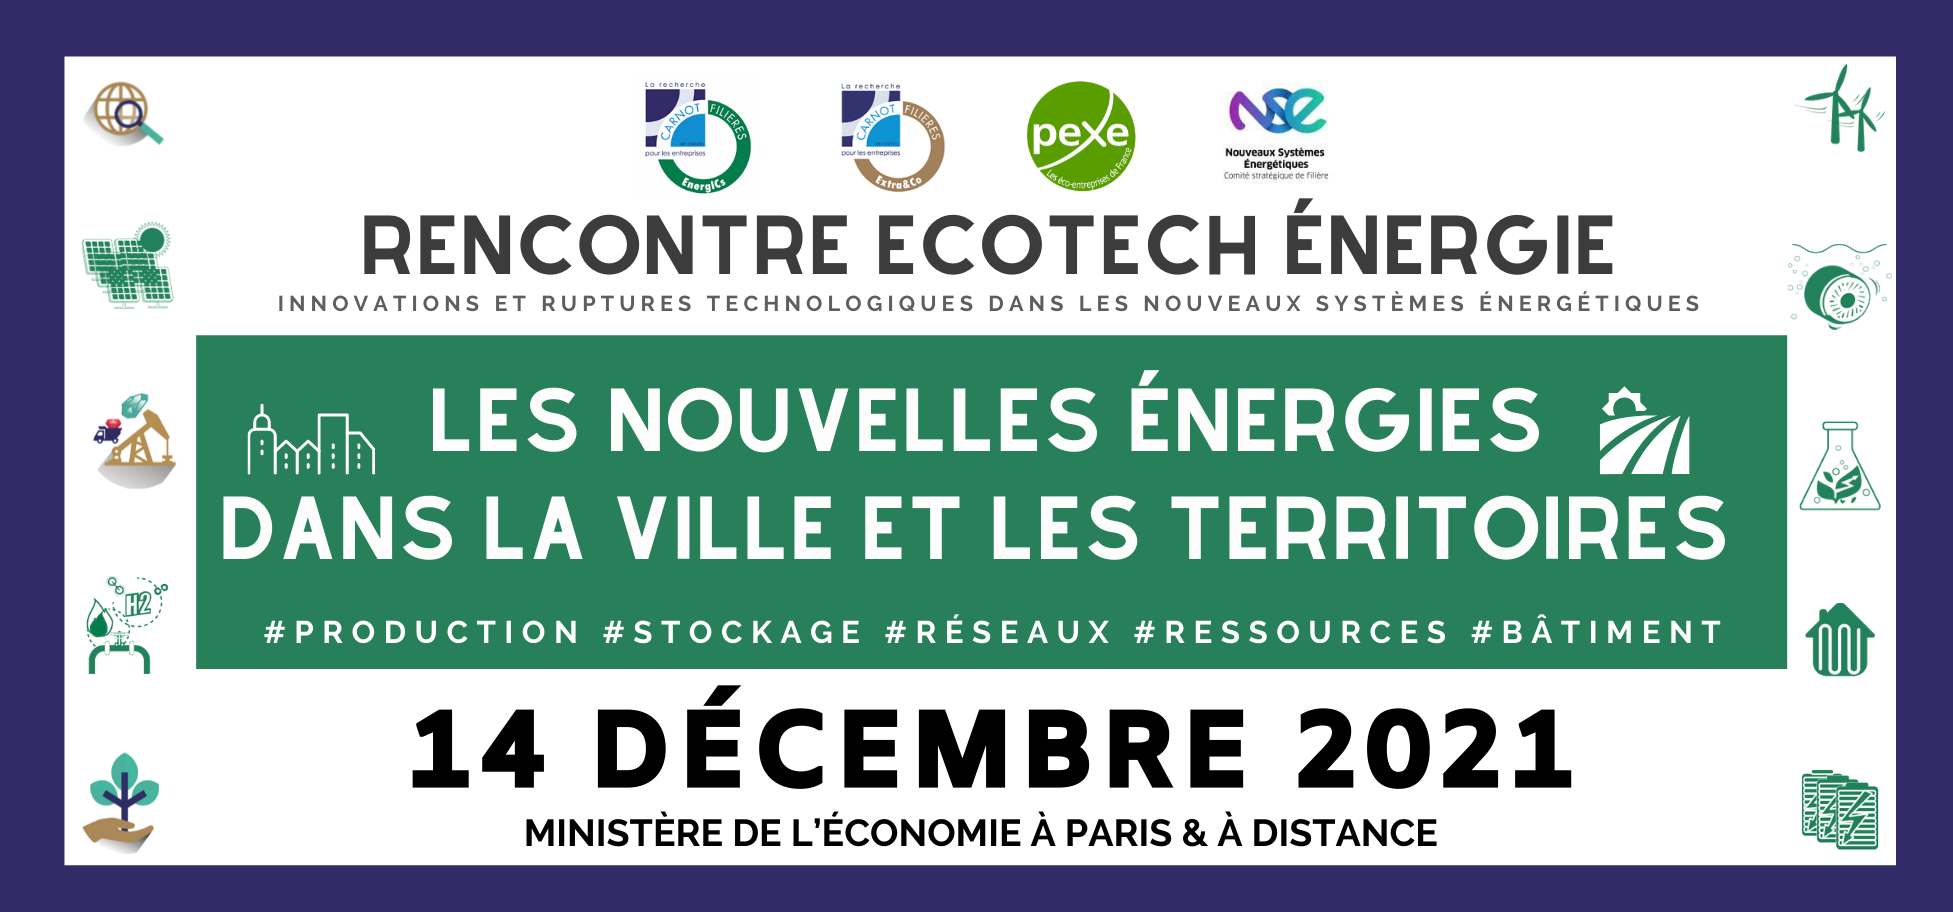 Le 14 décembre prochain, participez au rendez-vous annuel de la communauté des acteurs de l'innovation de l'énergie !